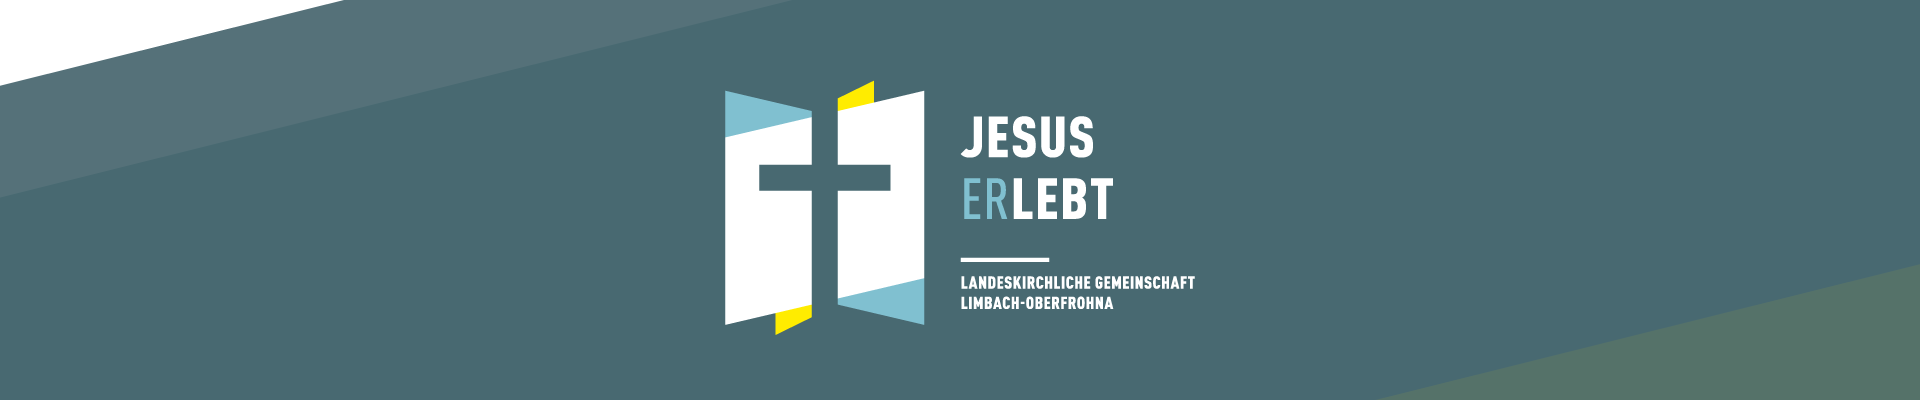 Landeskirchliche Gemeinschaft Limbach-Oberfrohna